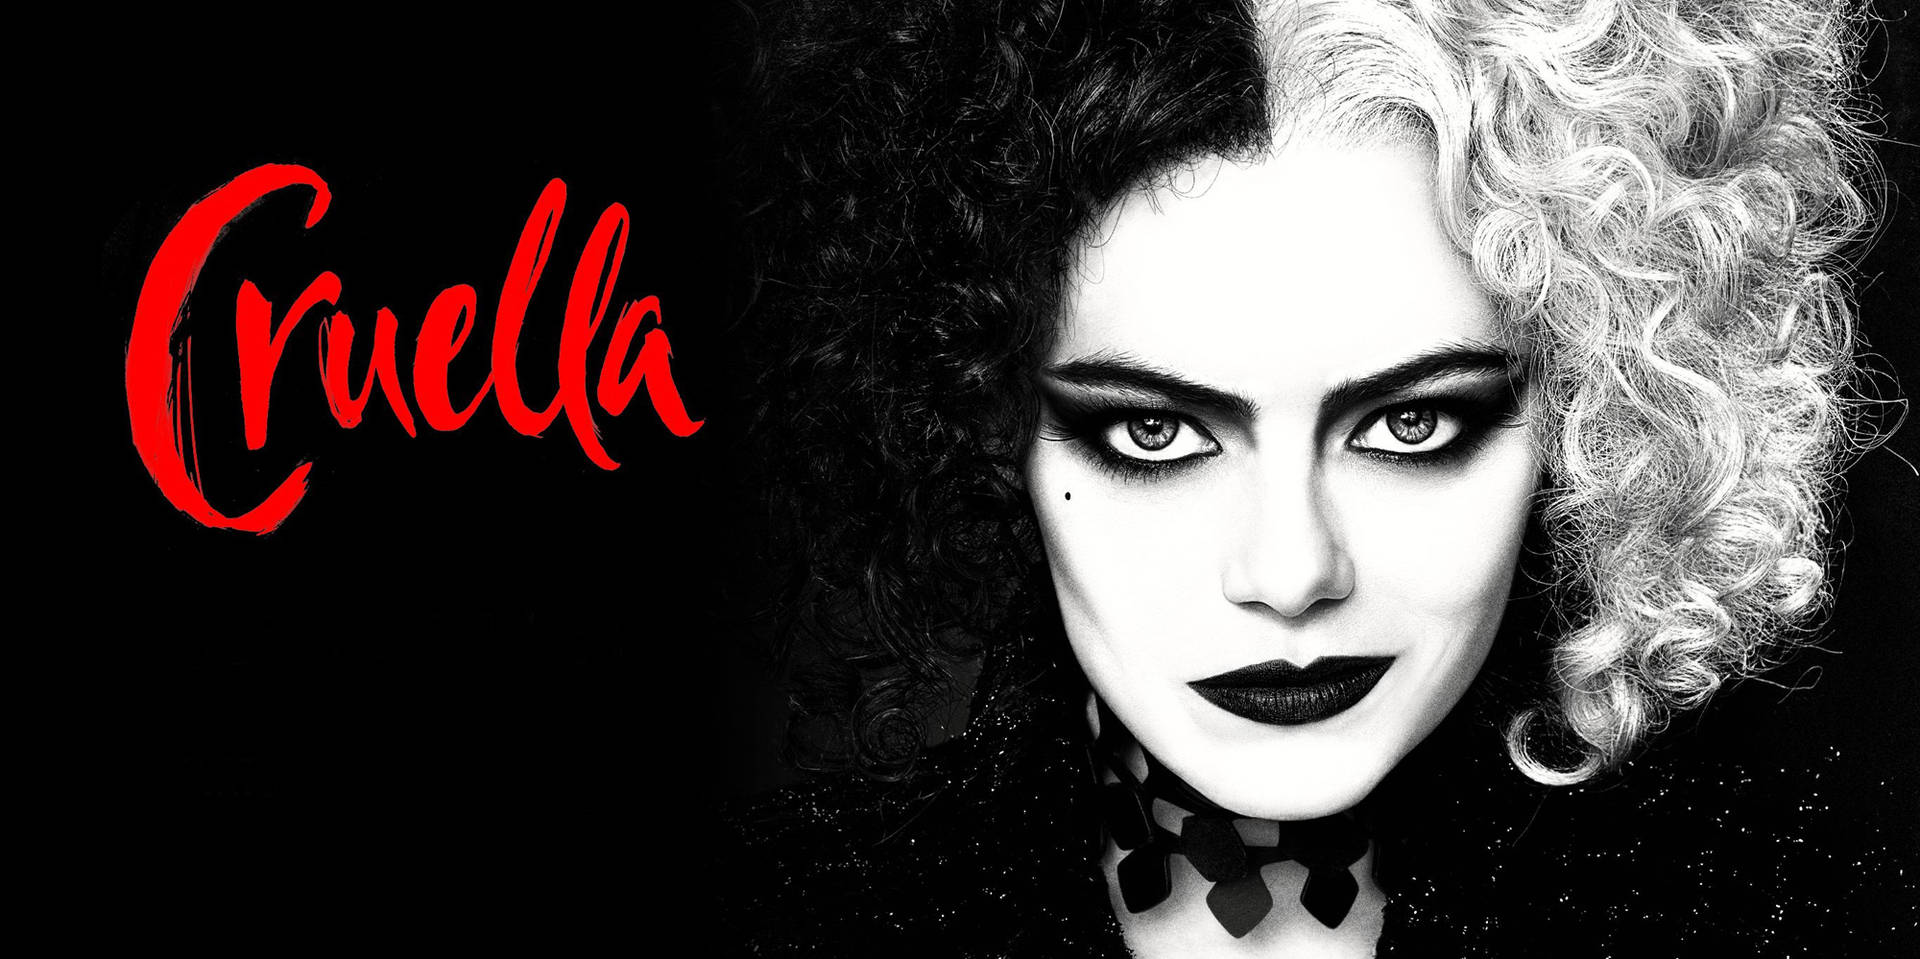 Cruella In Monochrome Background